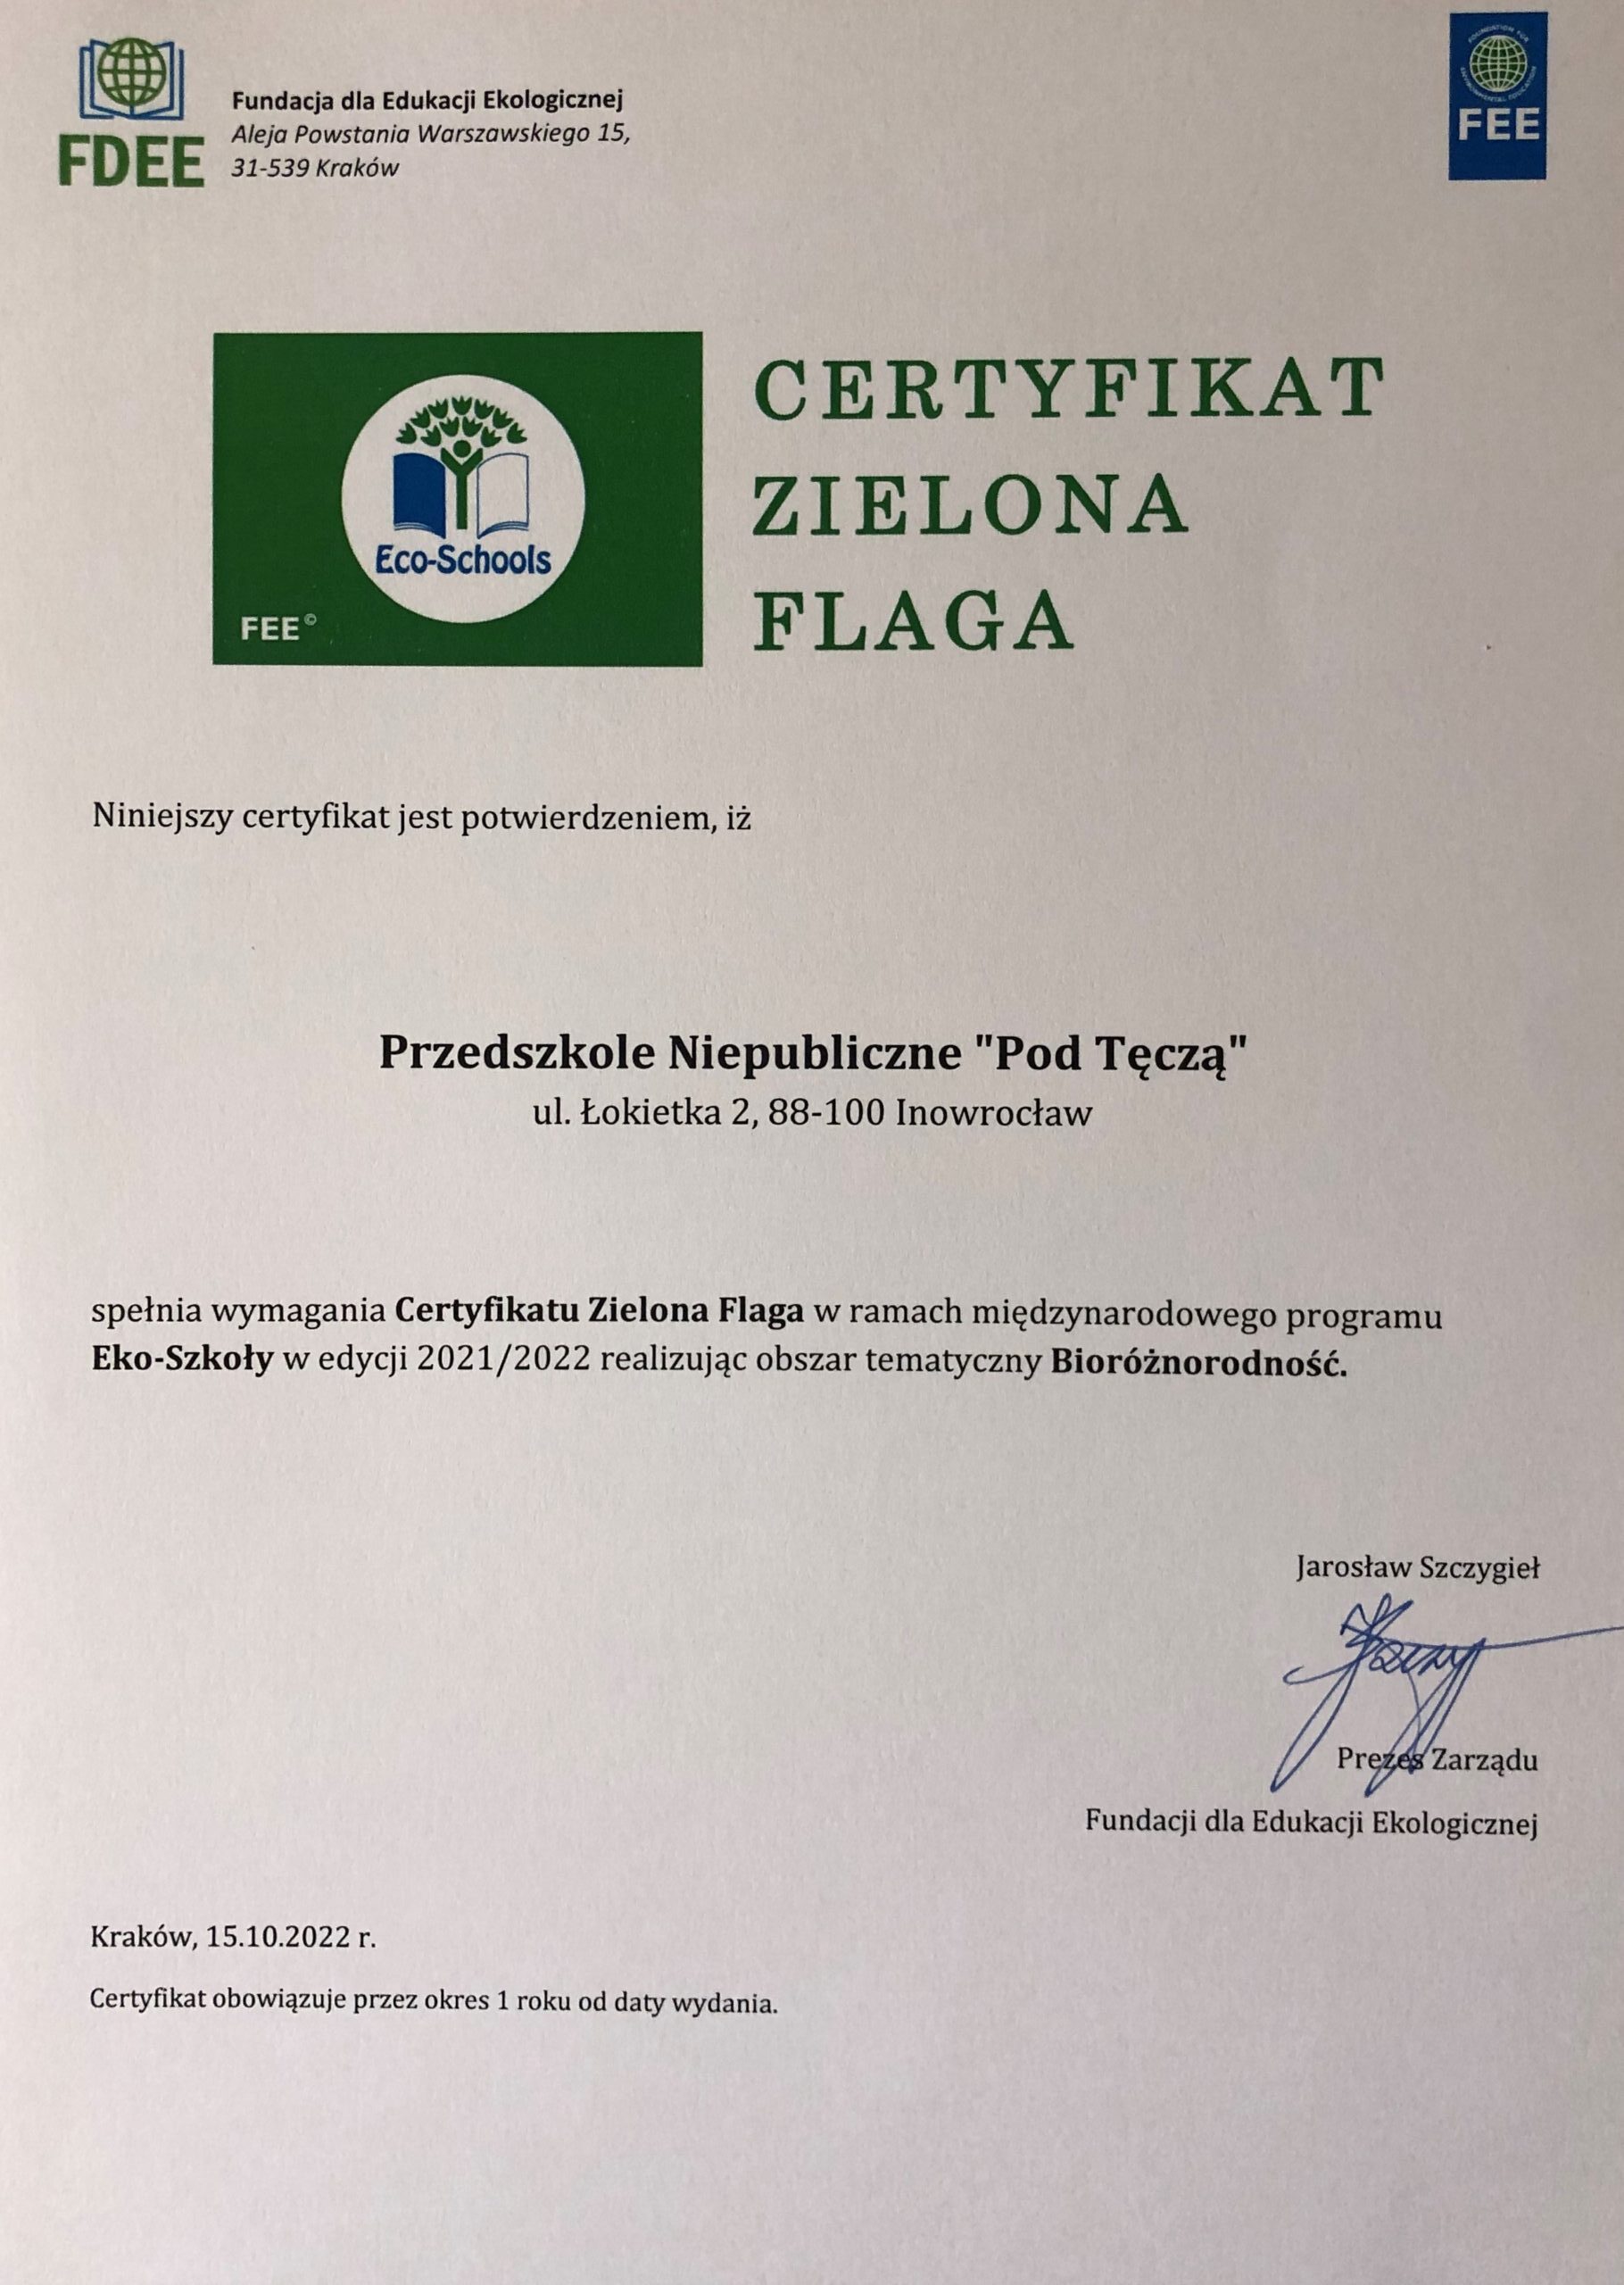 2022 Międzynarodowy Certyfikat Zielonej Flagi - skan